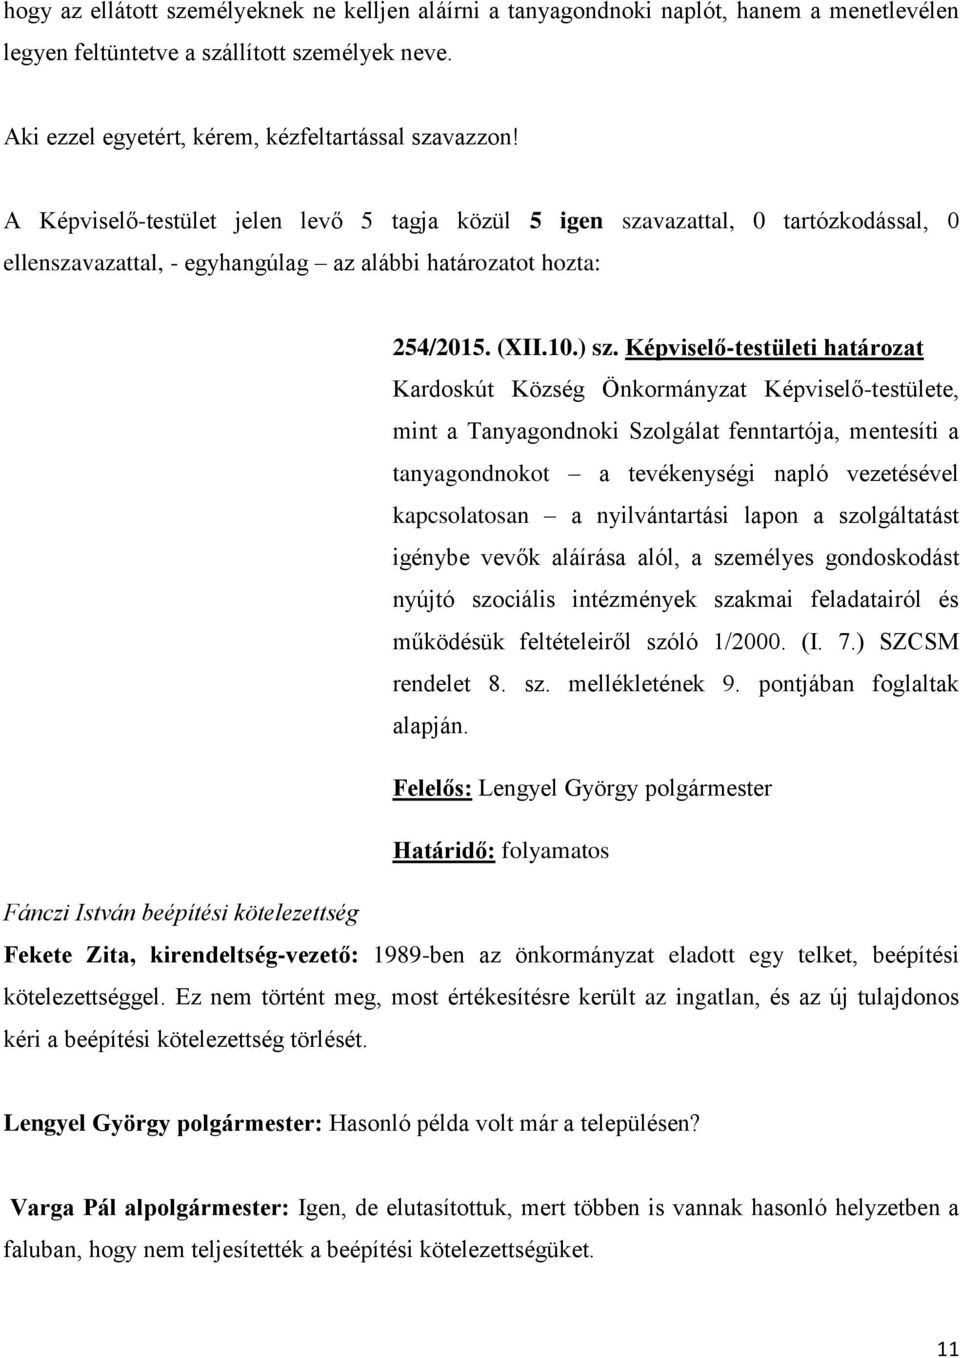 Képviselő-testületi határozat Kardoskút Község Önkormányzat Képviselő-testülete, mint a Tanyagondnoki Szolgálat fenntartója, mentesíti a tanyagondnokot a tevékenységi napló vezetésével kapcsolatosan